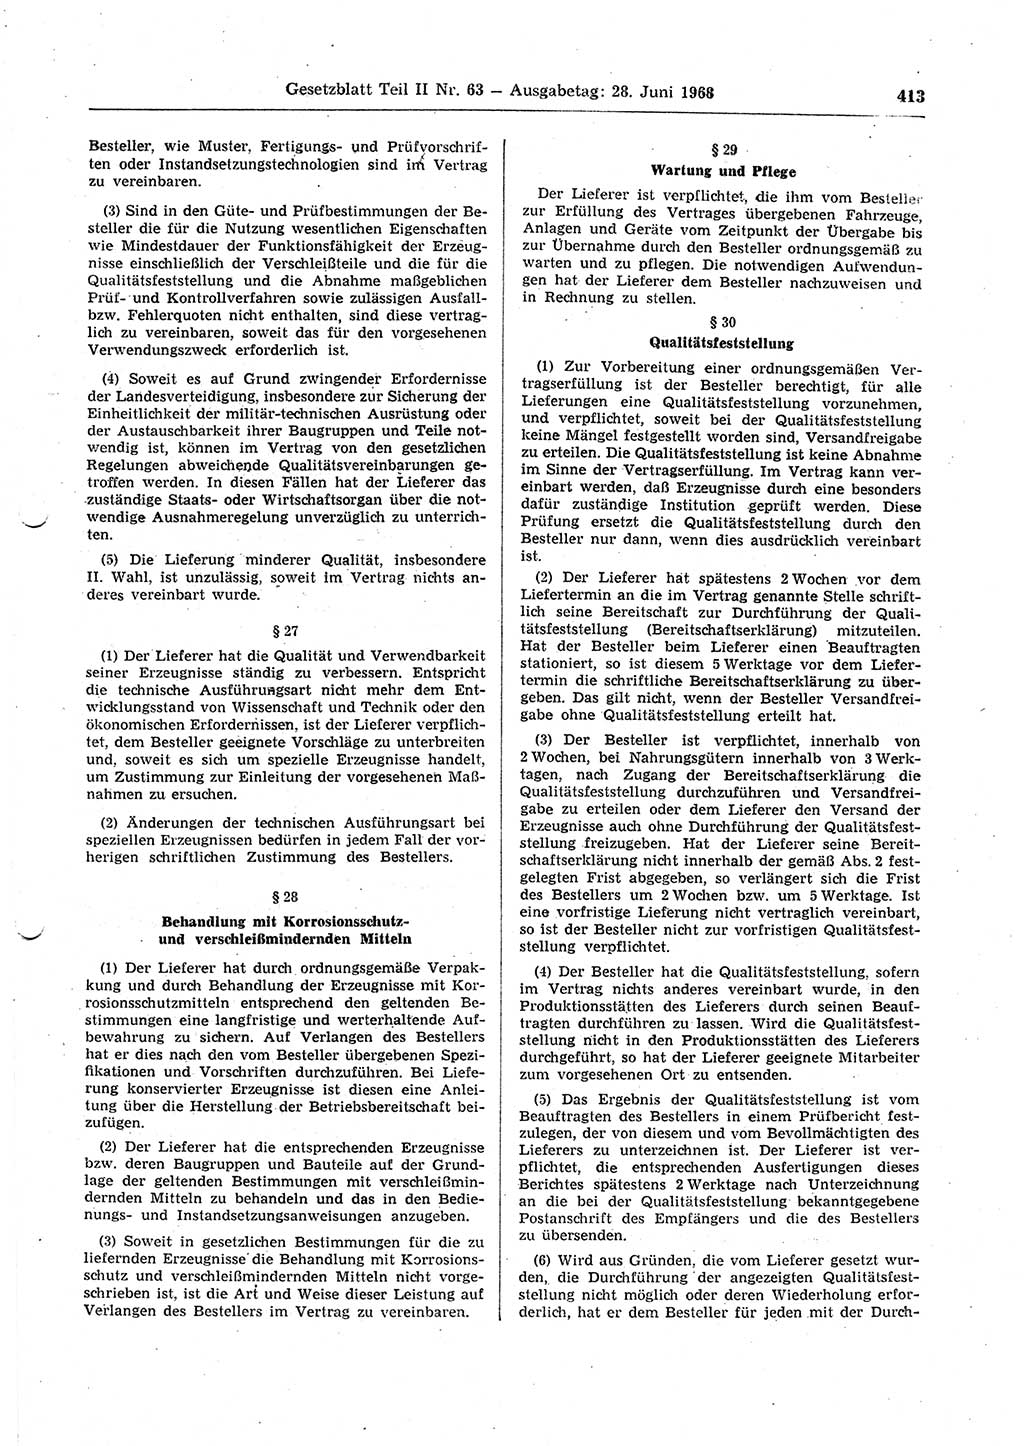 Gesetzblatt (GBl.) der Deutschen Demokratischen Republik (DDR) Teil ⅠⅠ 1968, Seite 413 (GBl. DDR ⅠⅠ 1968, S. 413)